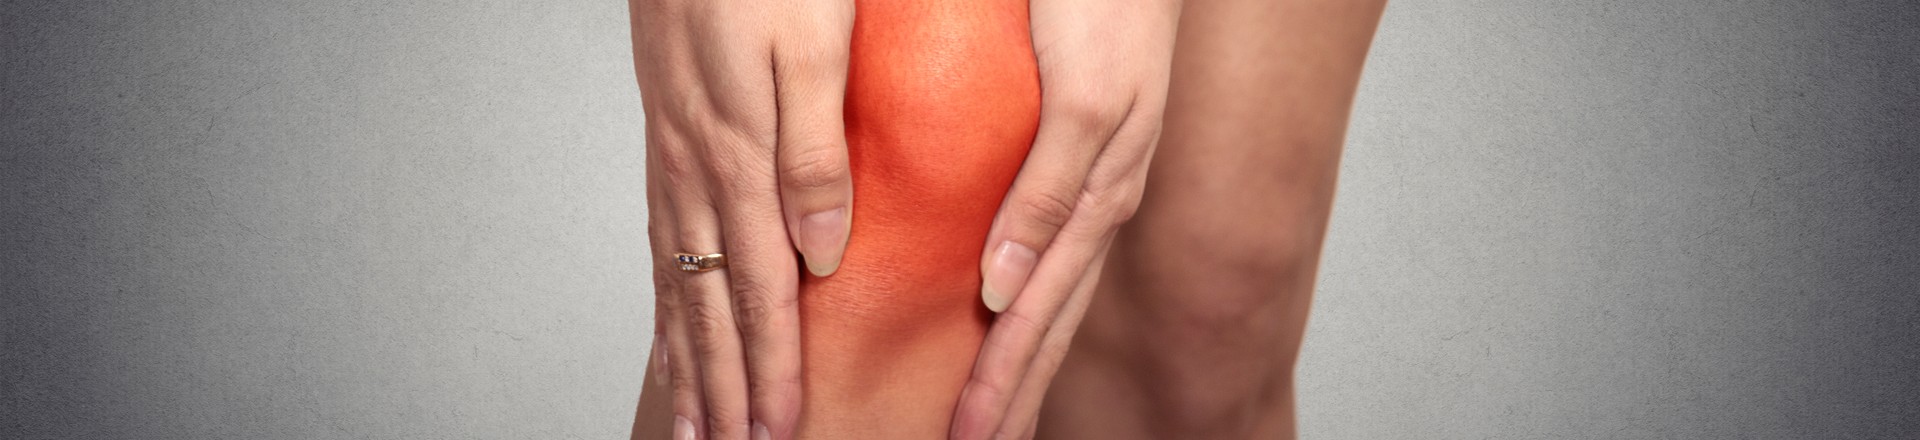 vitamin D for knee arthritis